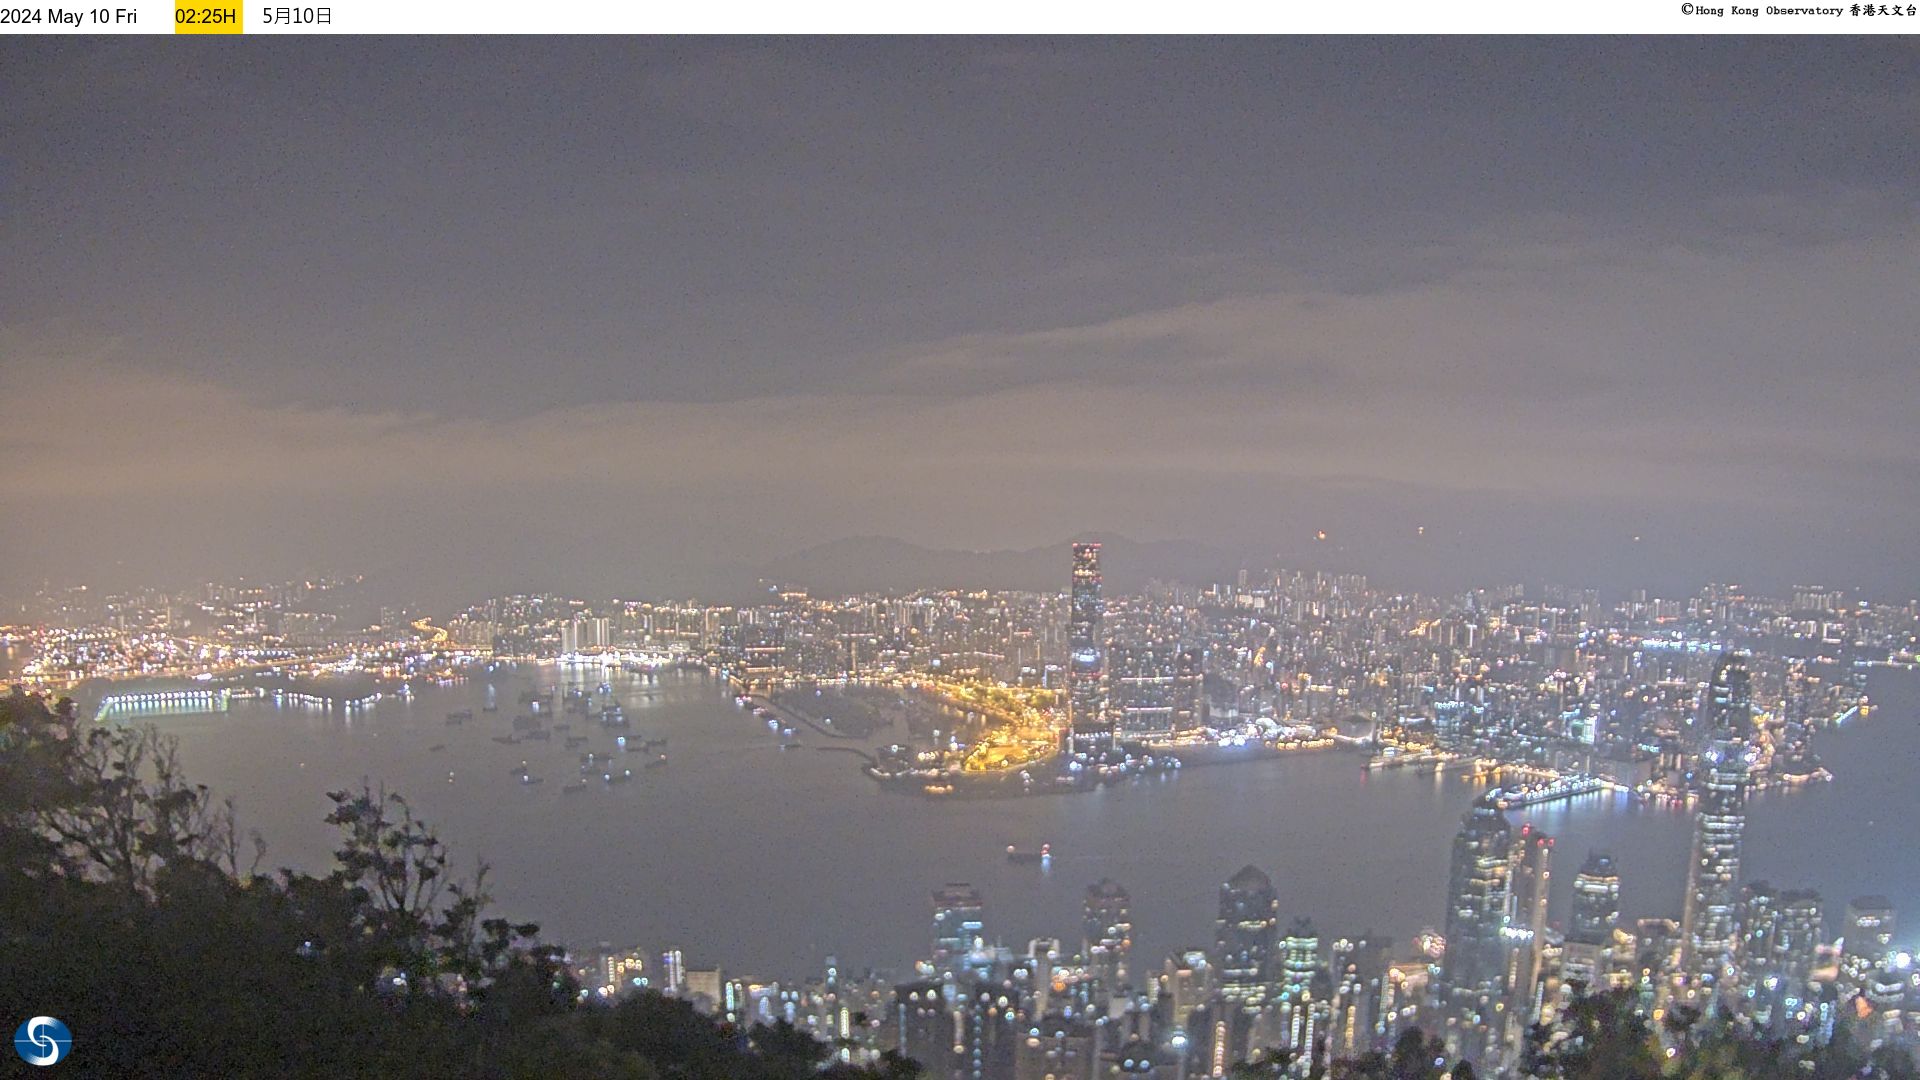 Hong Kong Fri. 02:33